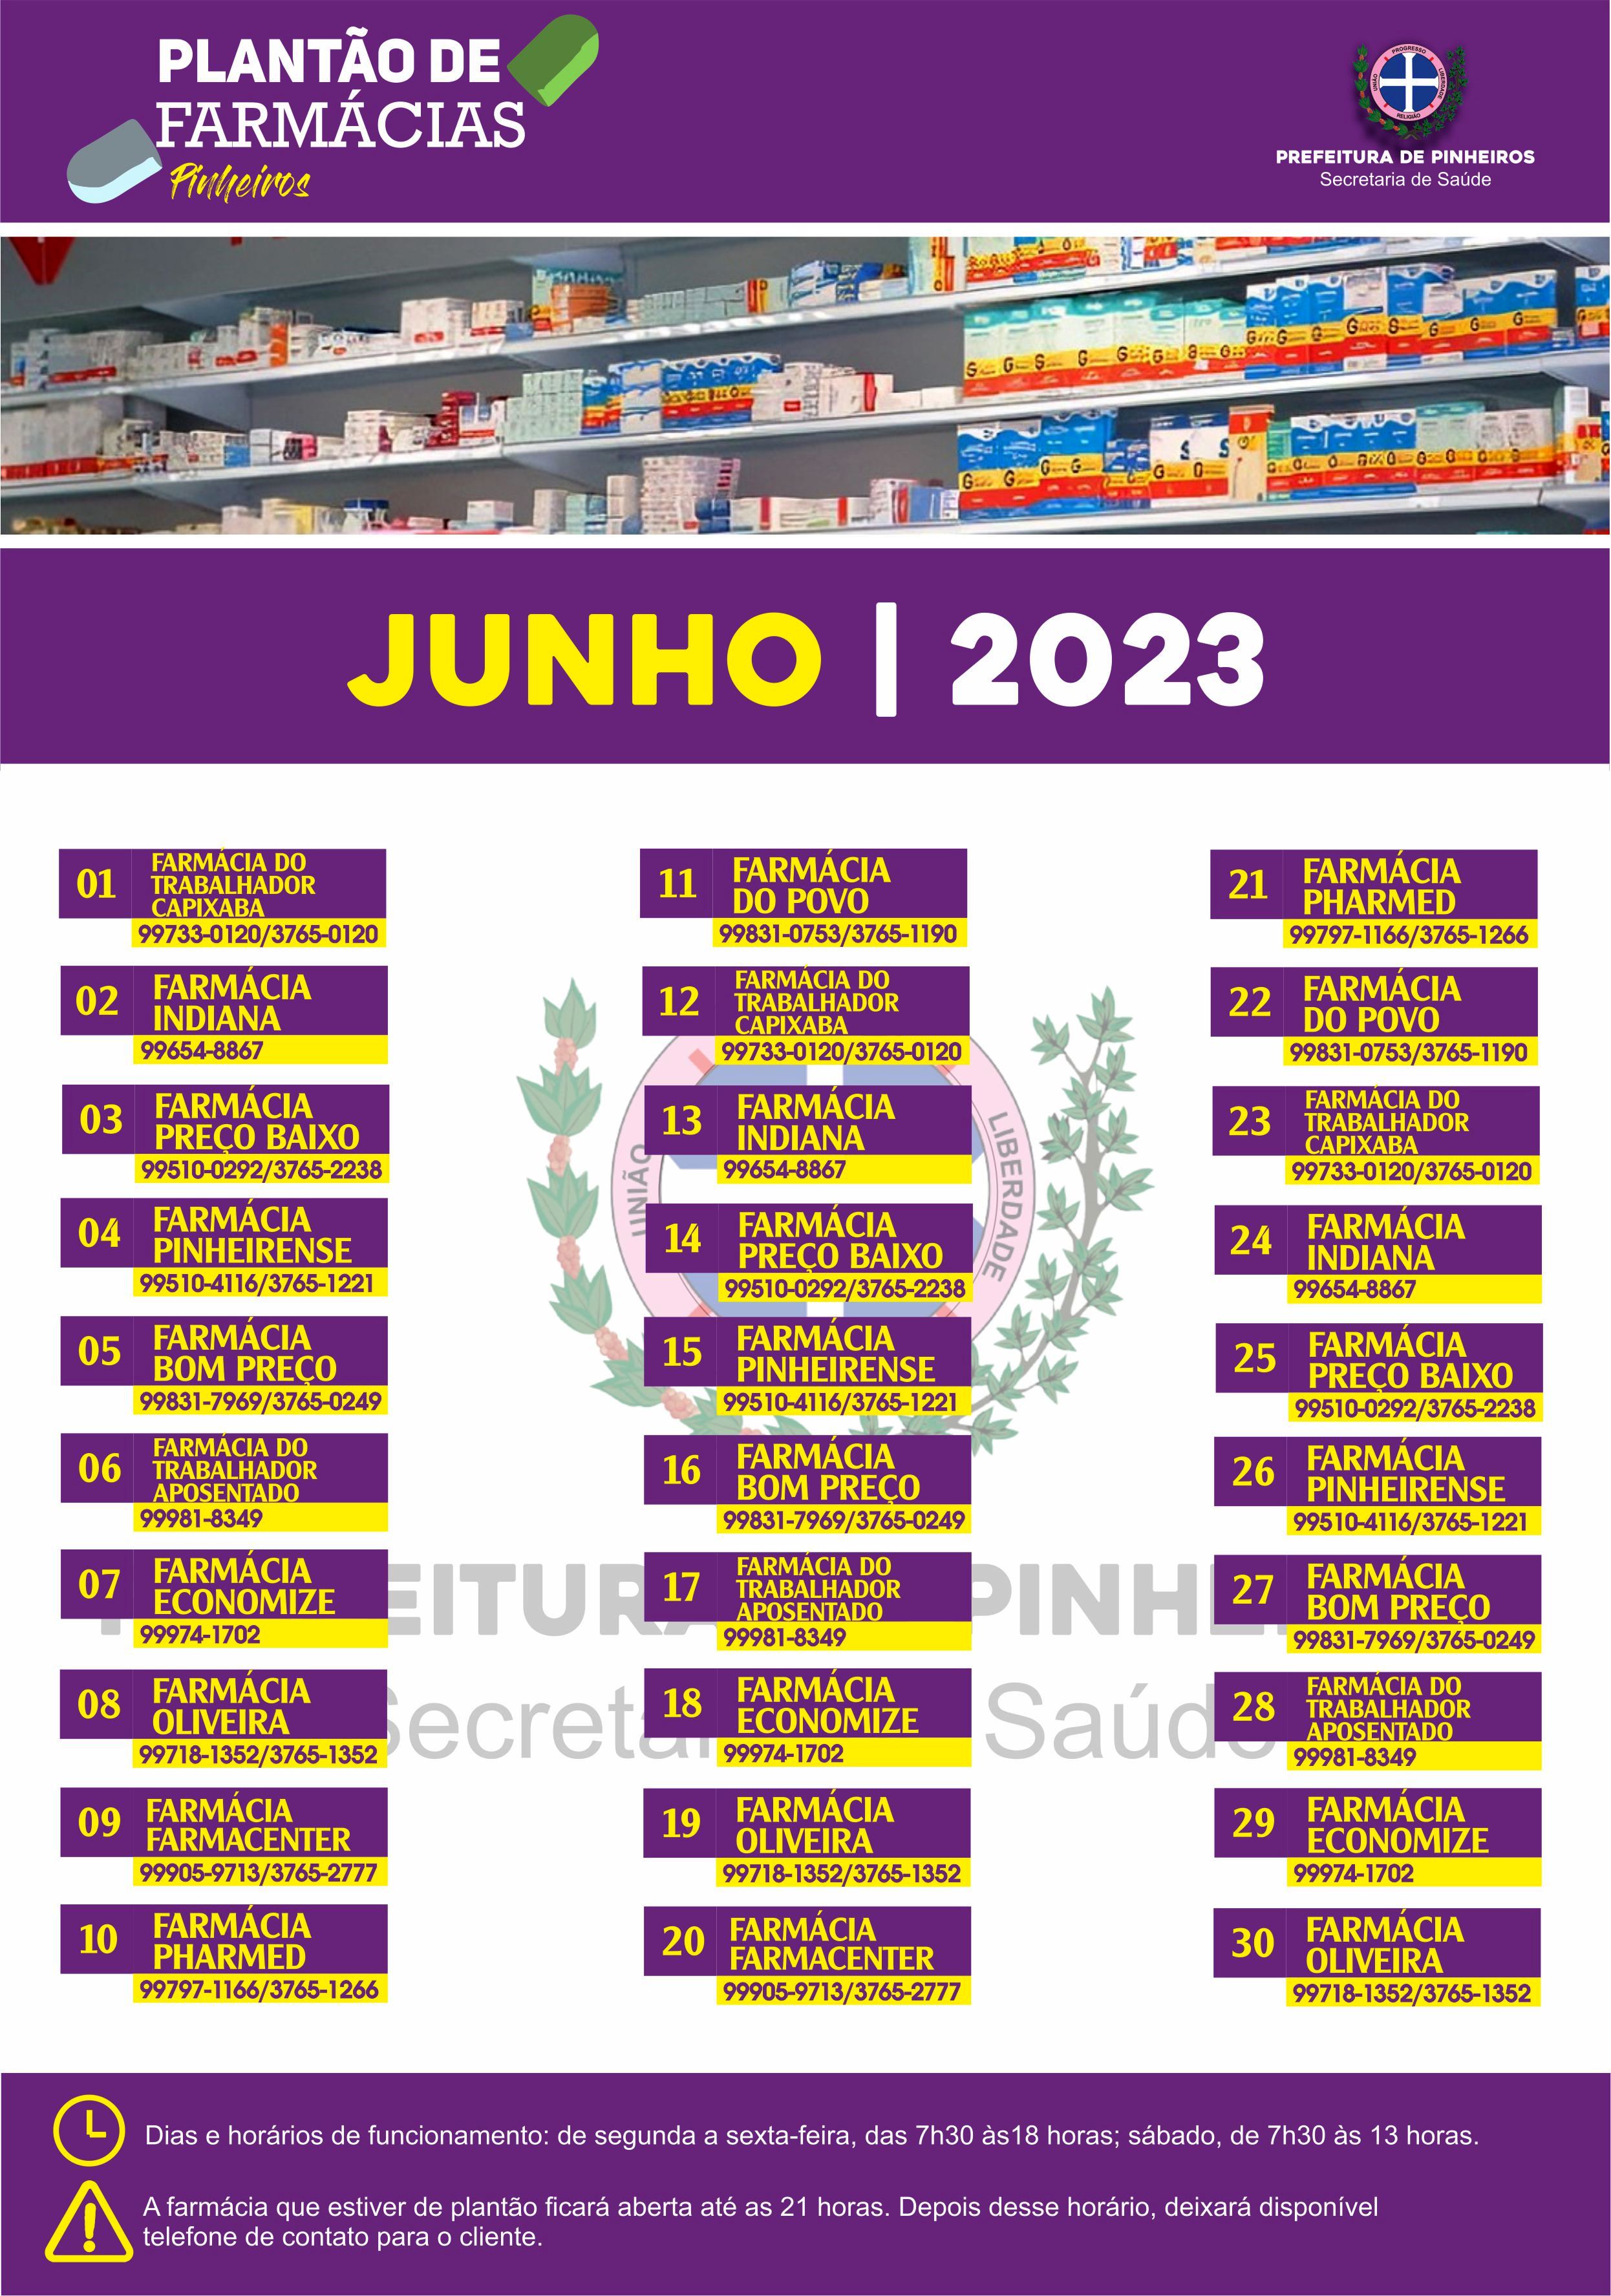 Calendário do Plantão de Farmácias do mês de junho